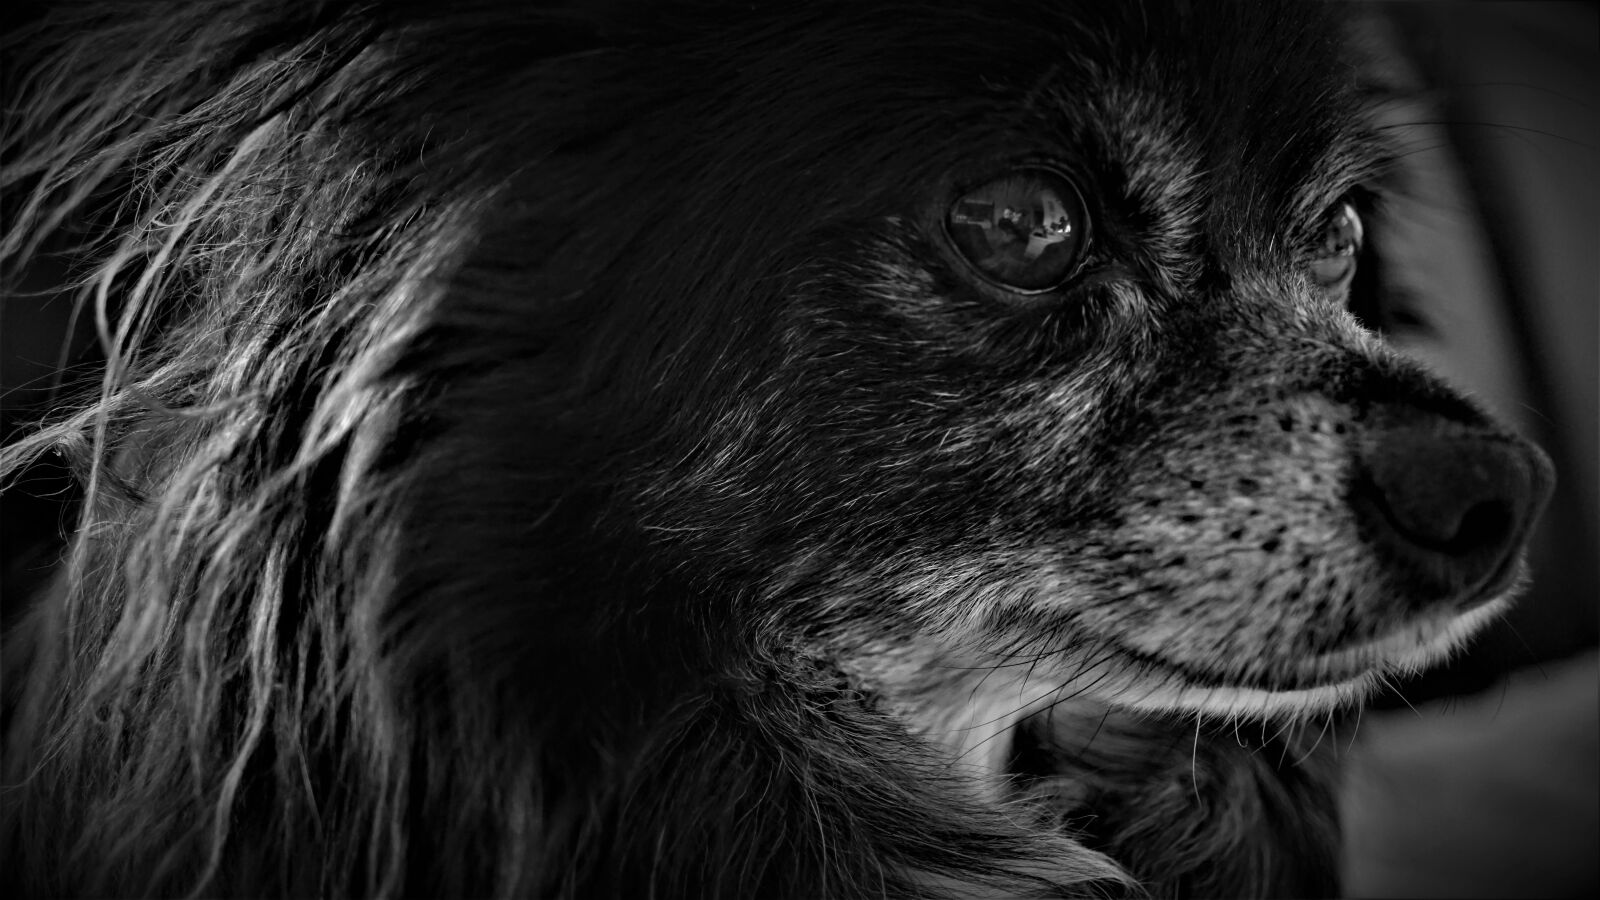 Sony a6000 + Sony E 30mm F3.5 Macro sample photo. Chihuahua, dog, small photography